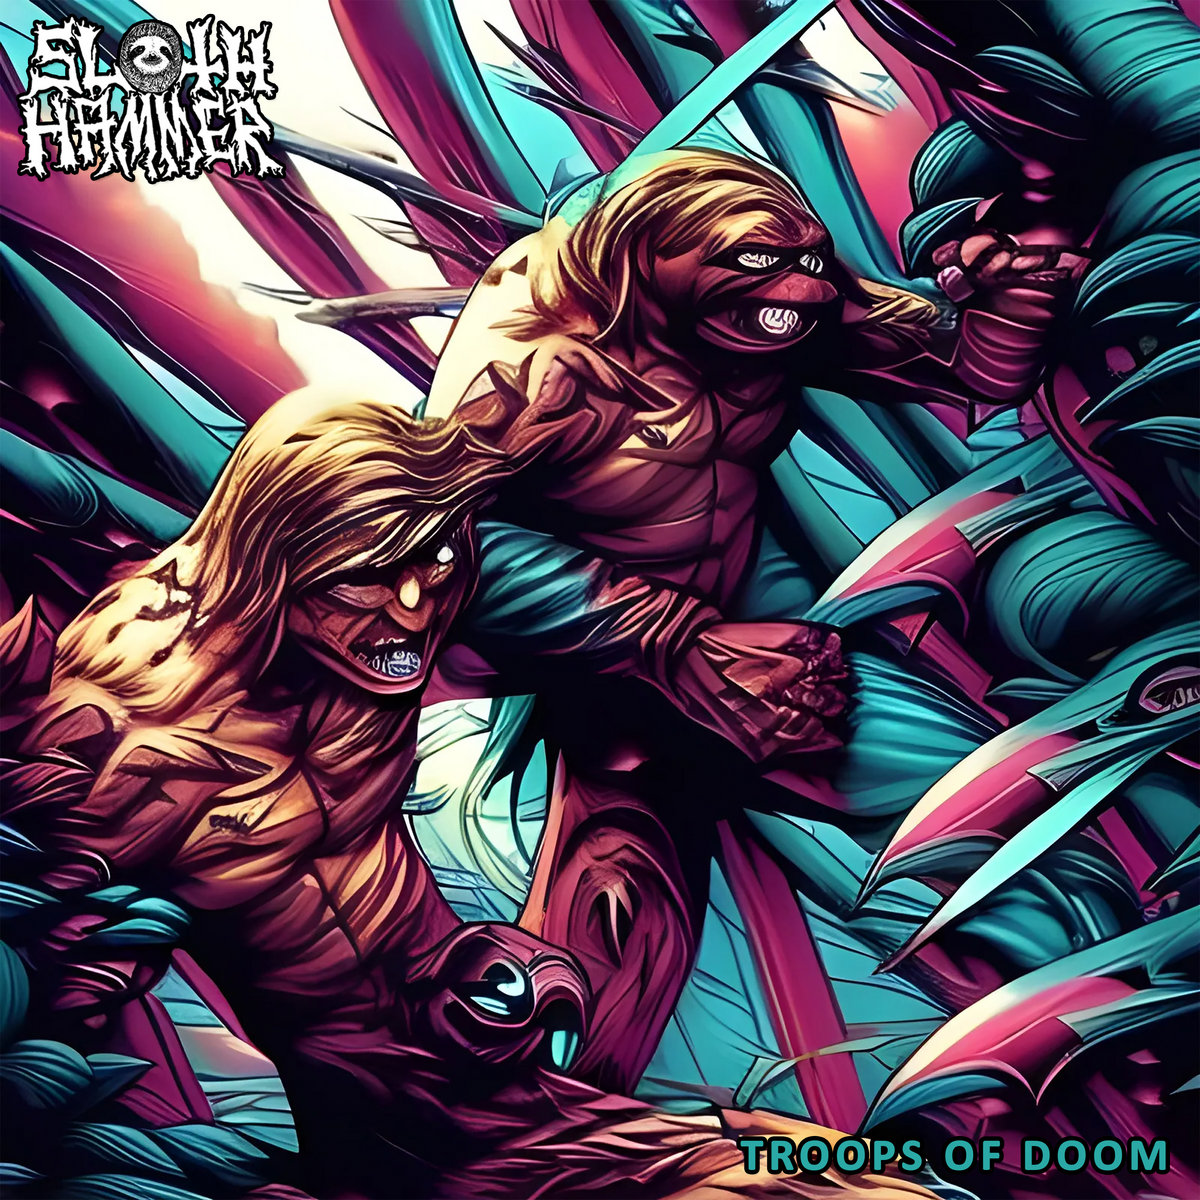 Sloth Hammer - "Troops of Doom" - 2023